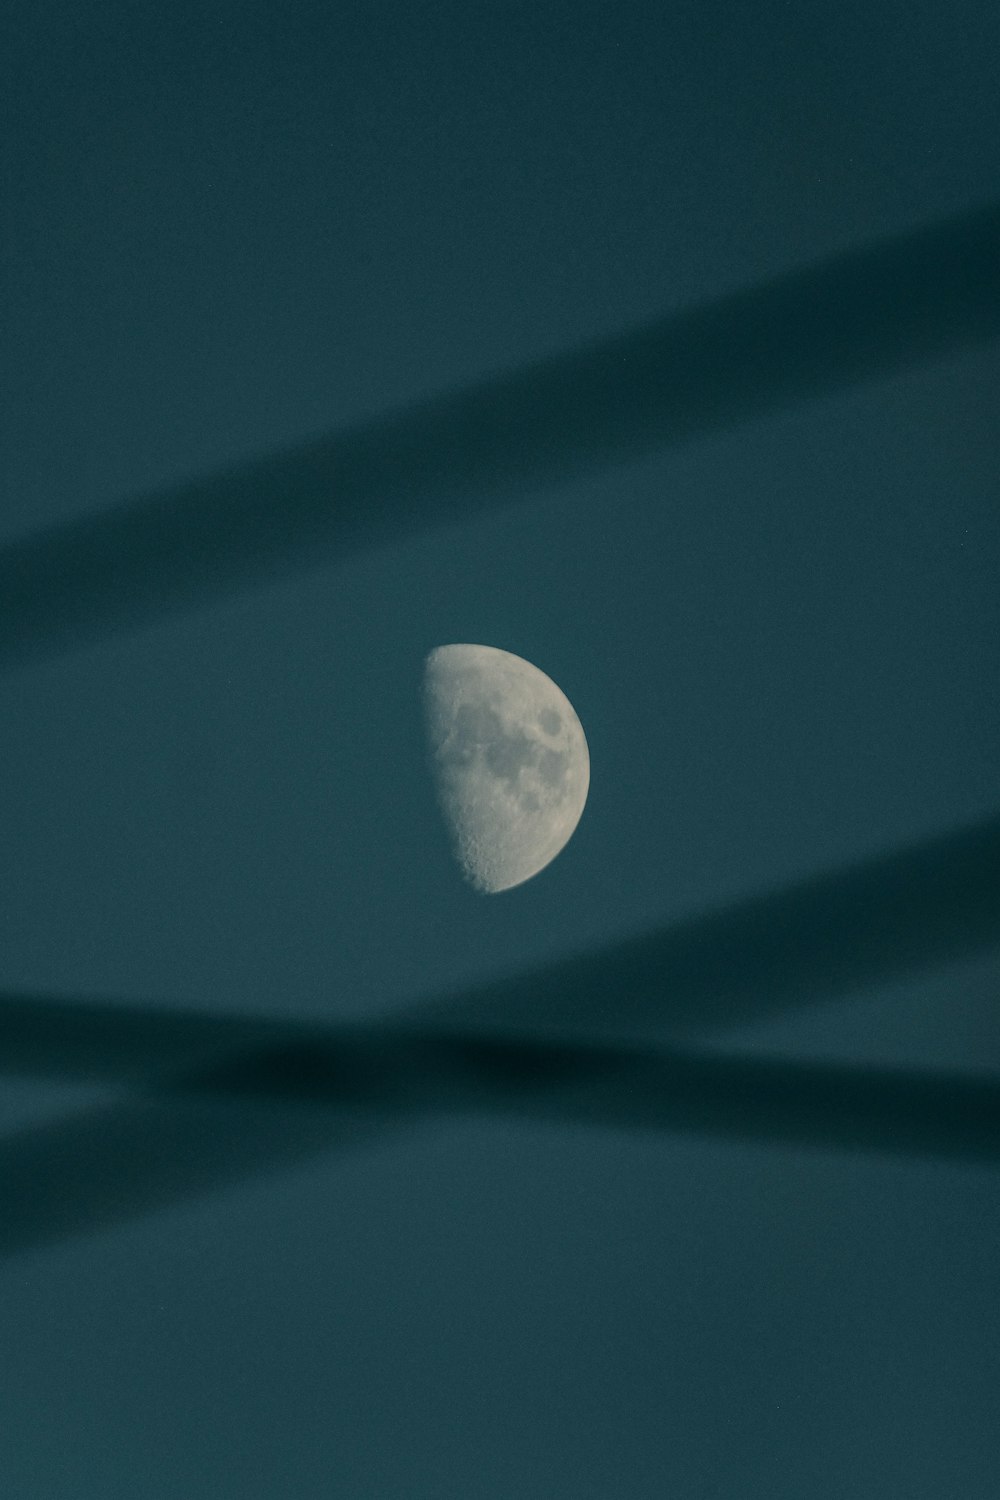 La luna è vista attraverso le linee sottili nel cielo